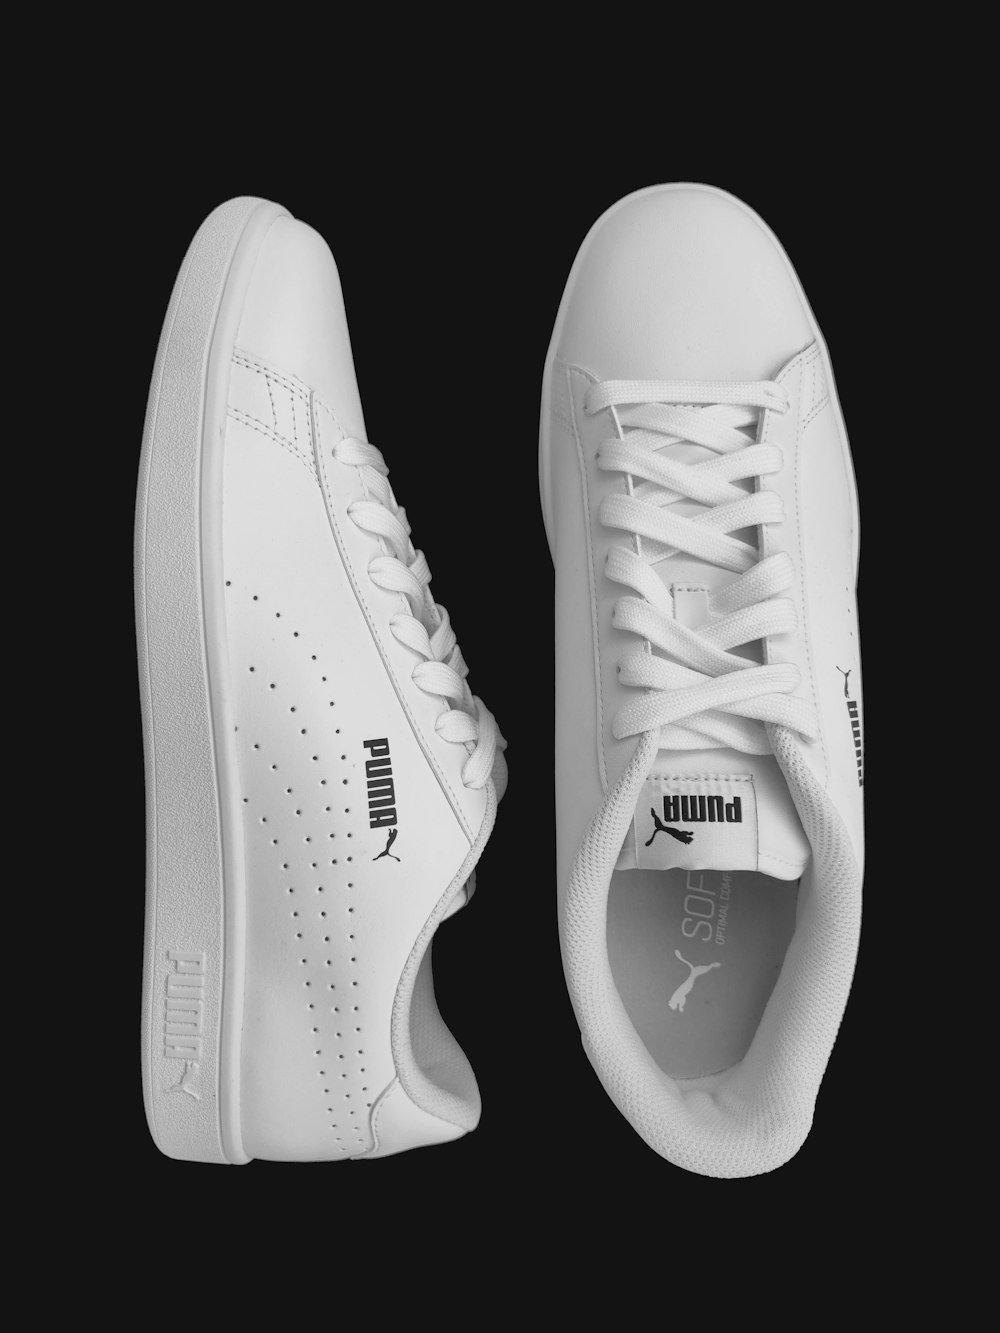 Zapatillas deportivas Nike blancas y negras